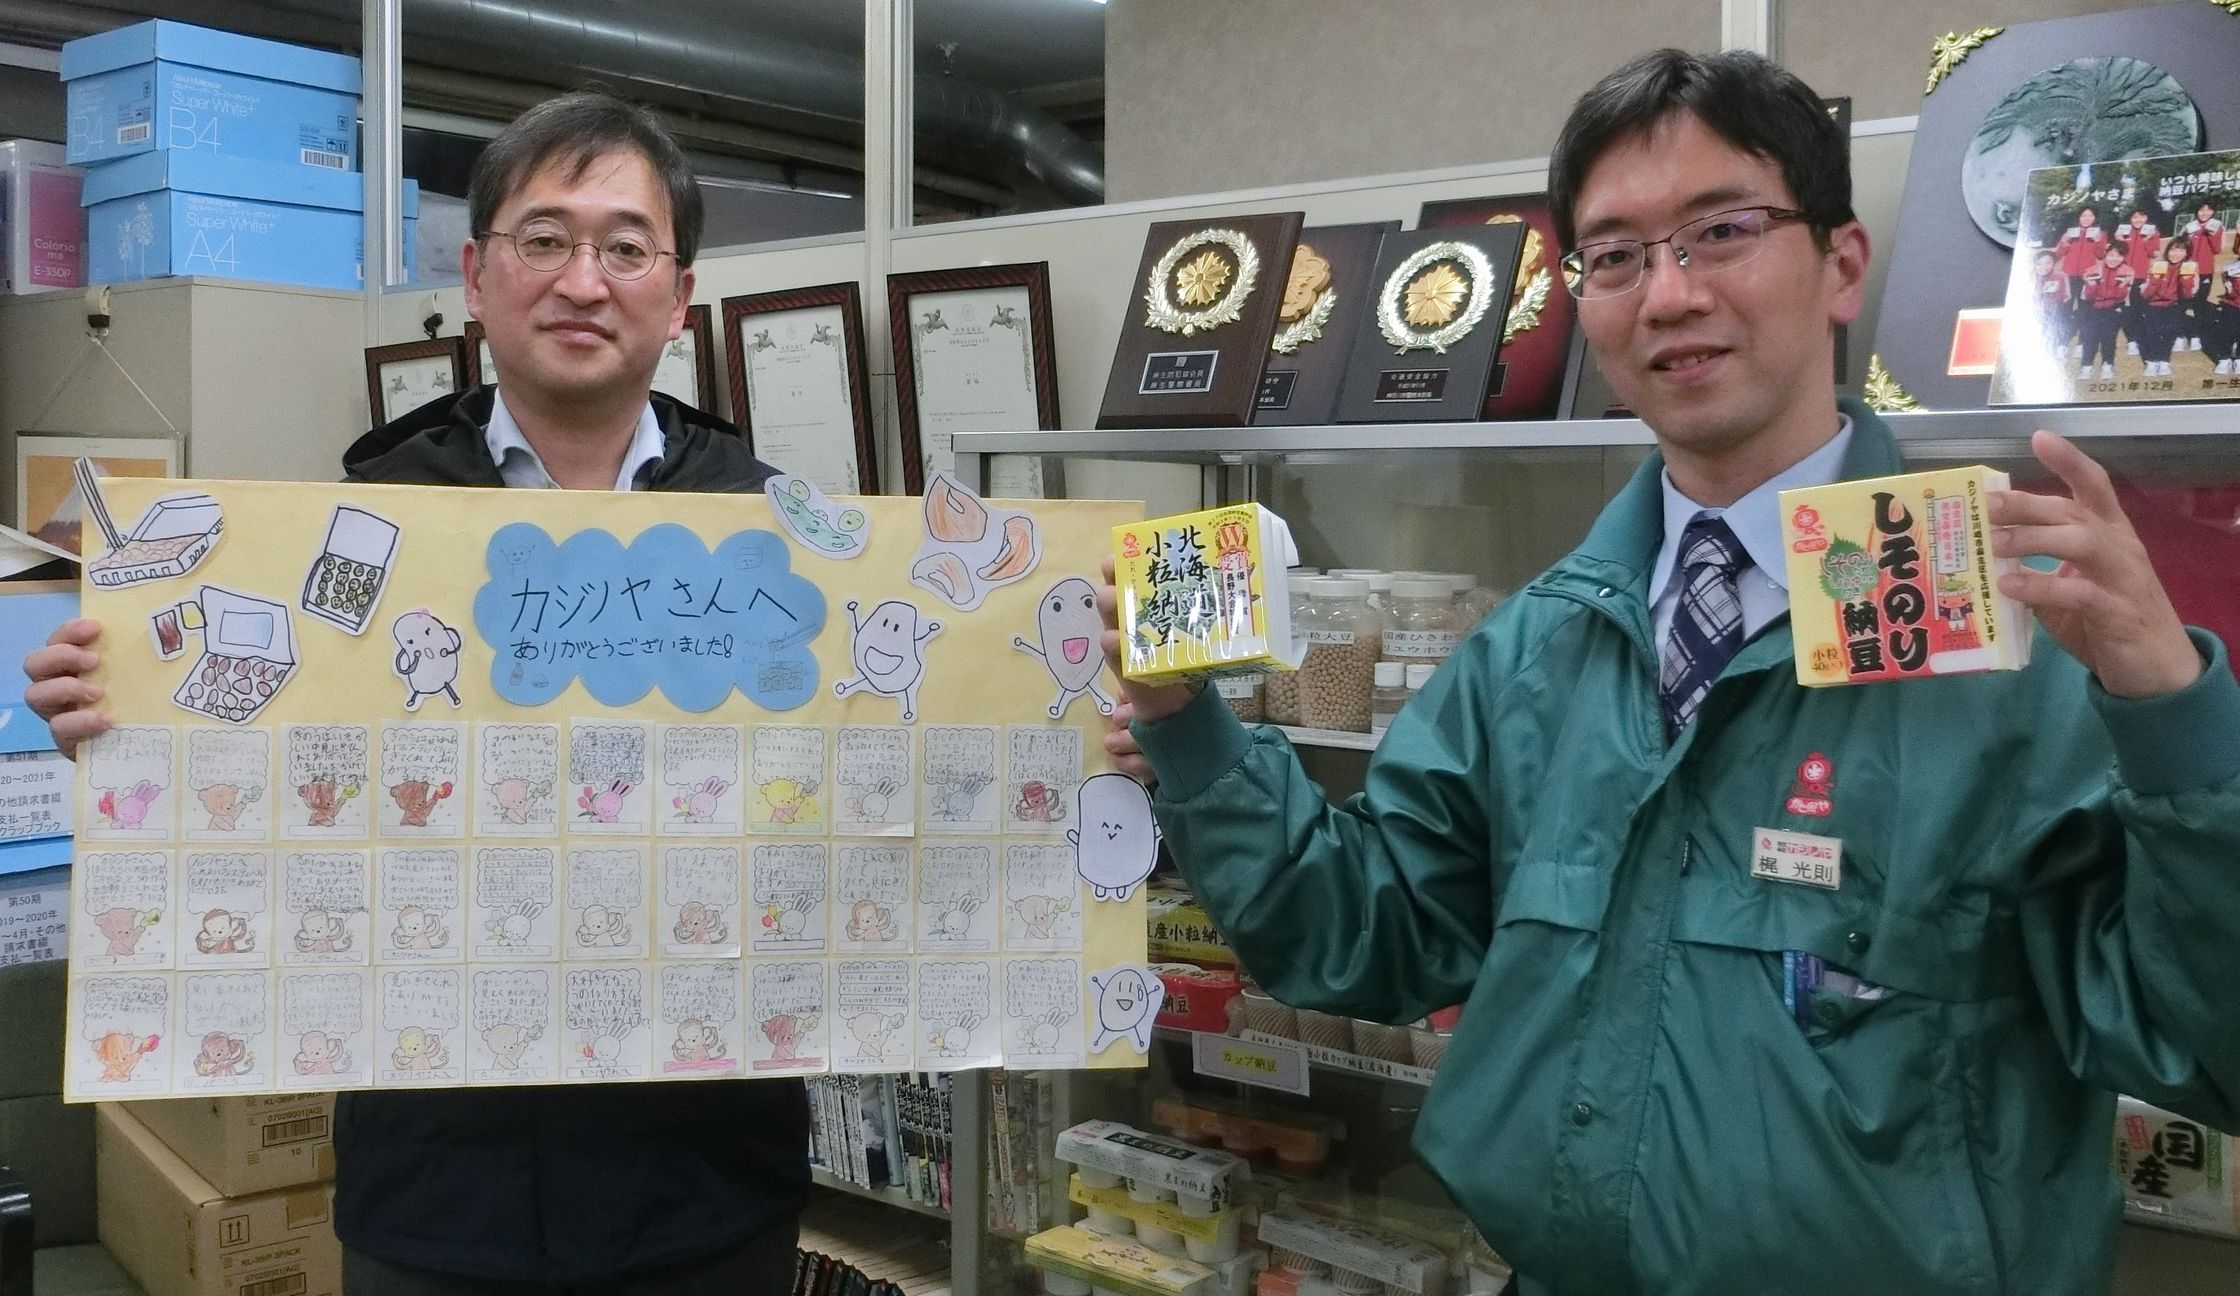 梶光則社長(右)と岡田純常務執行役員(左)、および岡上小学校の生徒から寄せられたカジノヤへの感謝のメッセージ